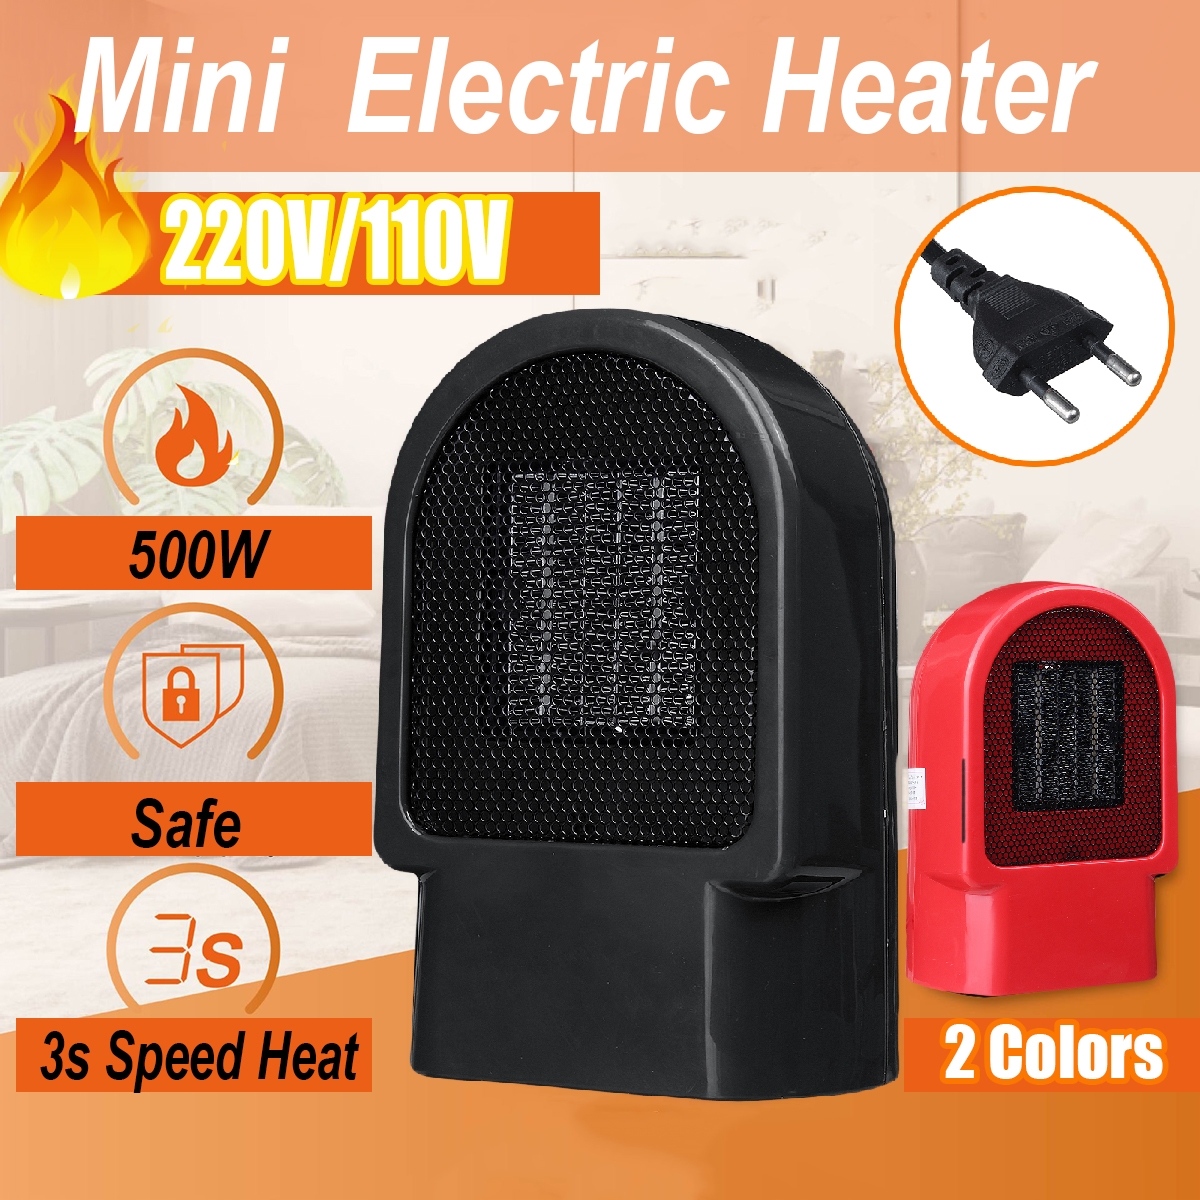 500W-Personal-Space-Heater-Mini-Electric-Desk-Heater-Fan-Heater-For-Home-Office-Floor-or-Desktop-1577731-2